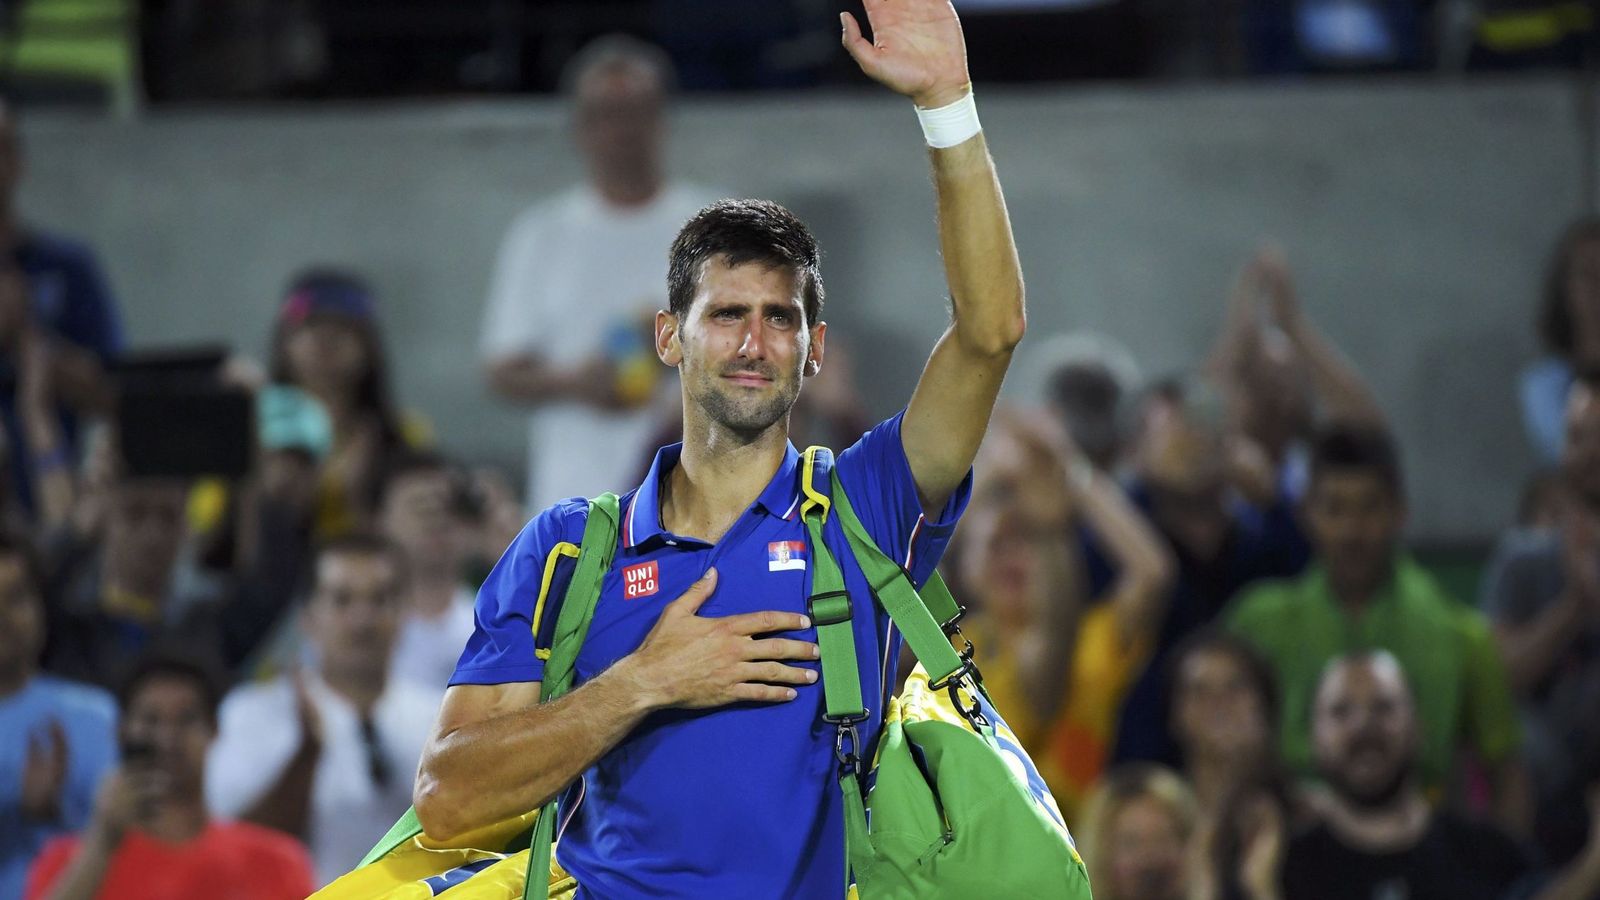 Foto: Djokovic se despide de la pista llorando tras perder contra Del Potro (Reuters).